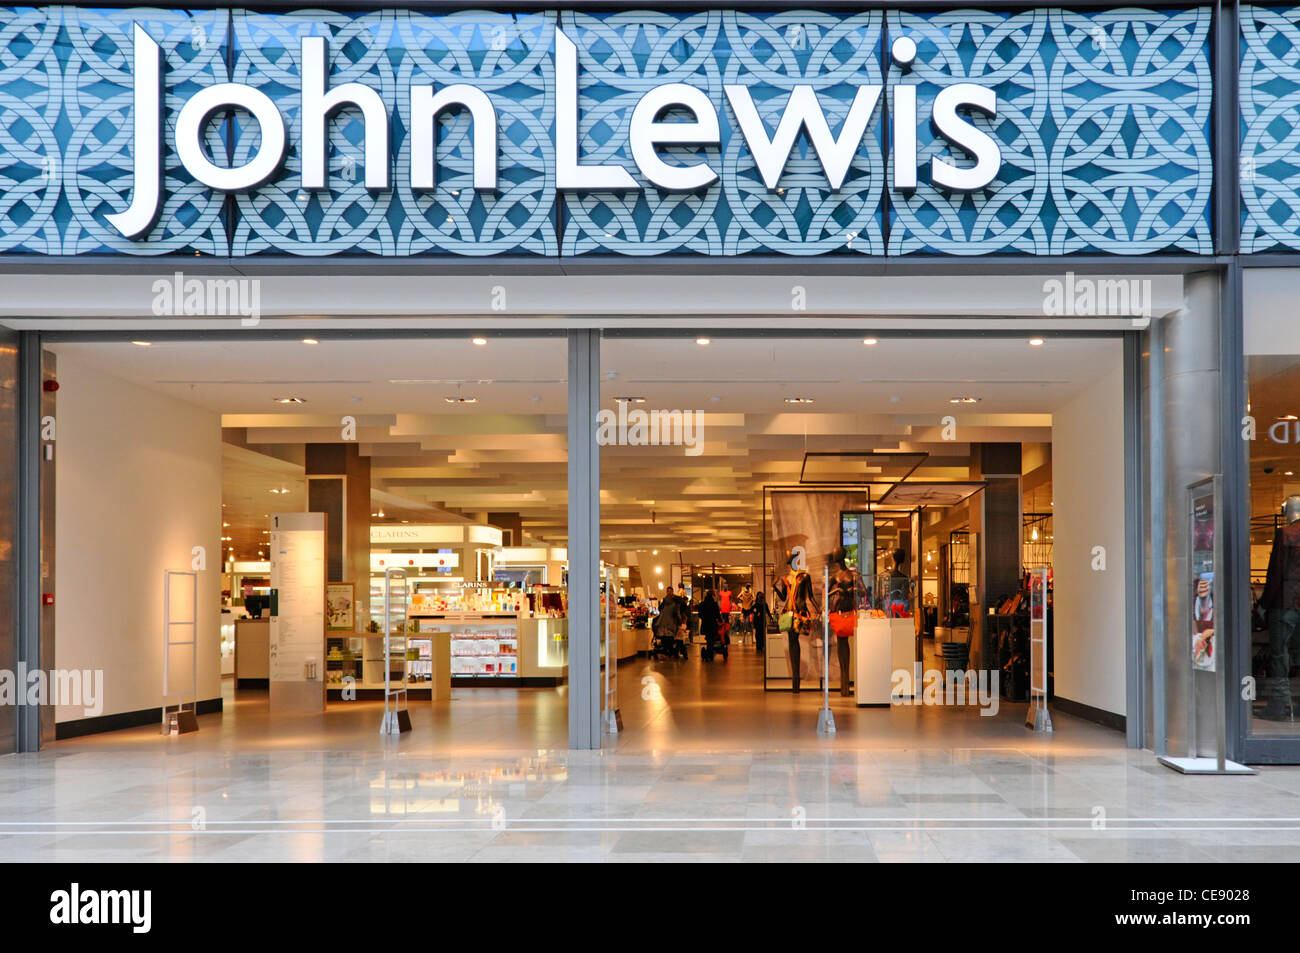 John Lewis Department Store Eingang und Innenraum vom Einkaufszentrum Westfield Stratford City Einkaufszentrum Stockfoto